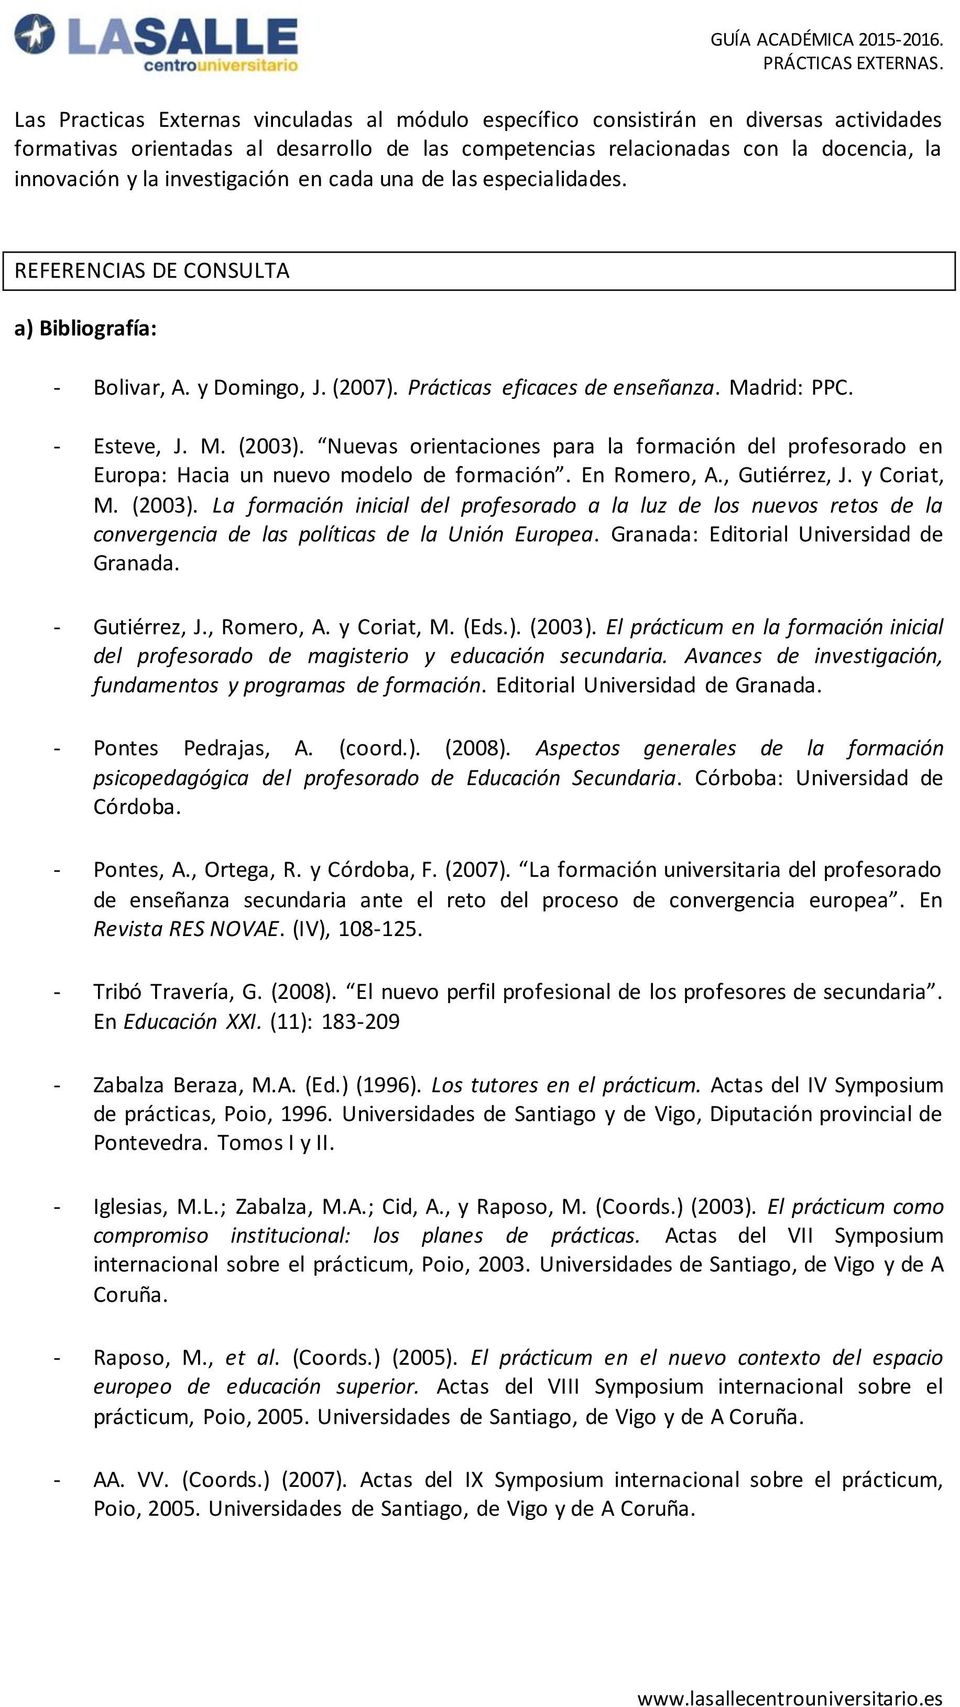 Nuevas orientaciones para la formación del profesorado en Europa: Hacia un nuevo modelo de formación. En Romero, A., Gutiérrez, J. y Coriat, M. (2003).